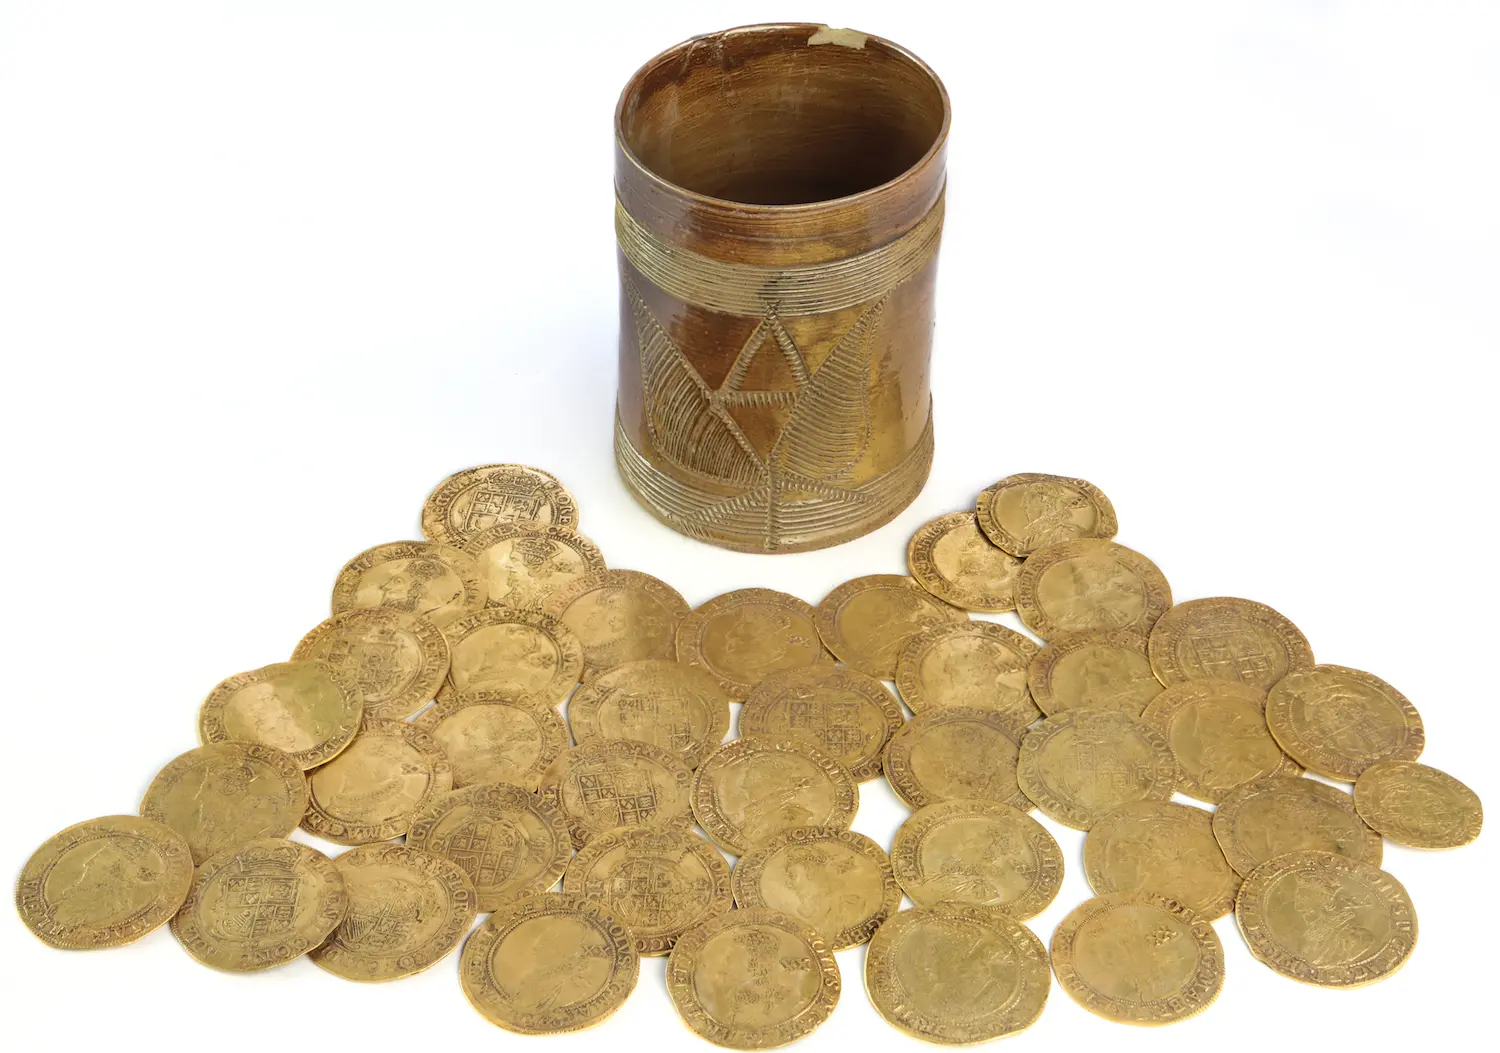 英夫妇厨房地下挖出大批稀有金币 估价25万